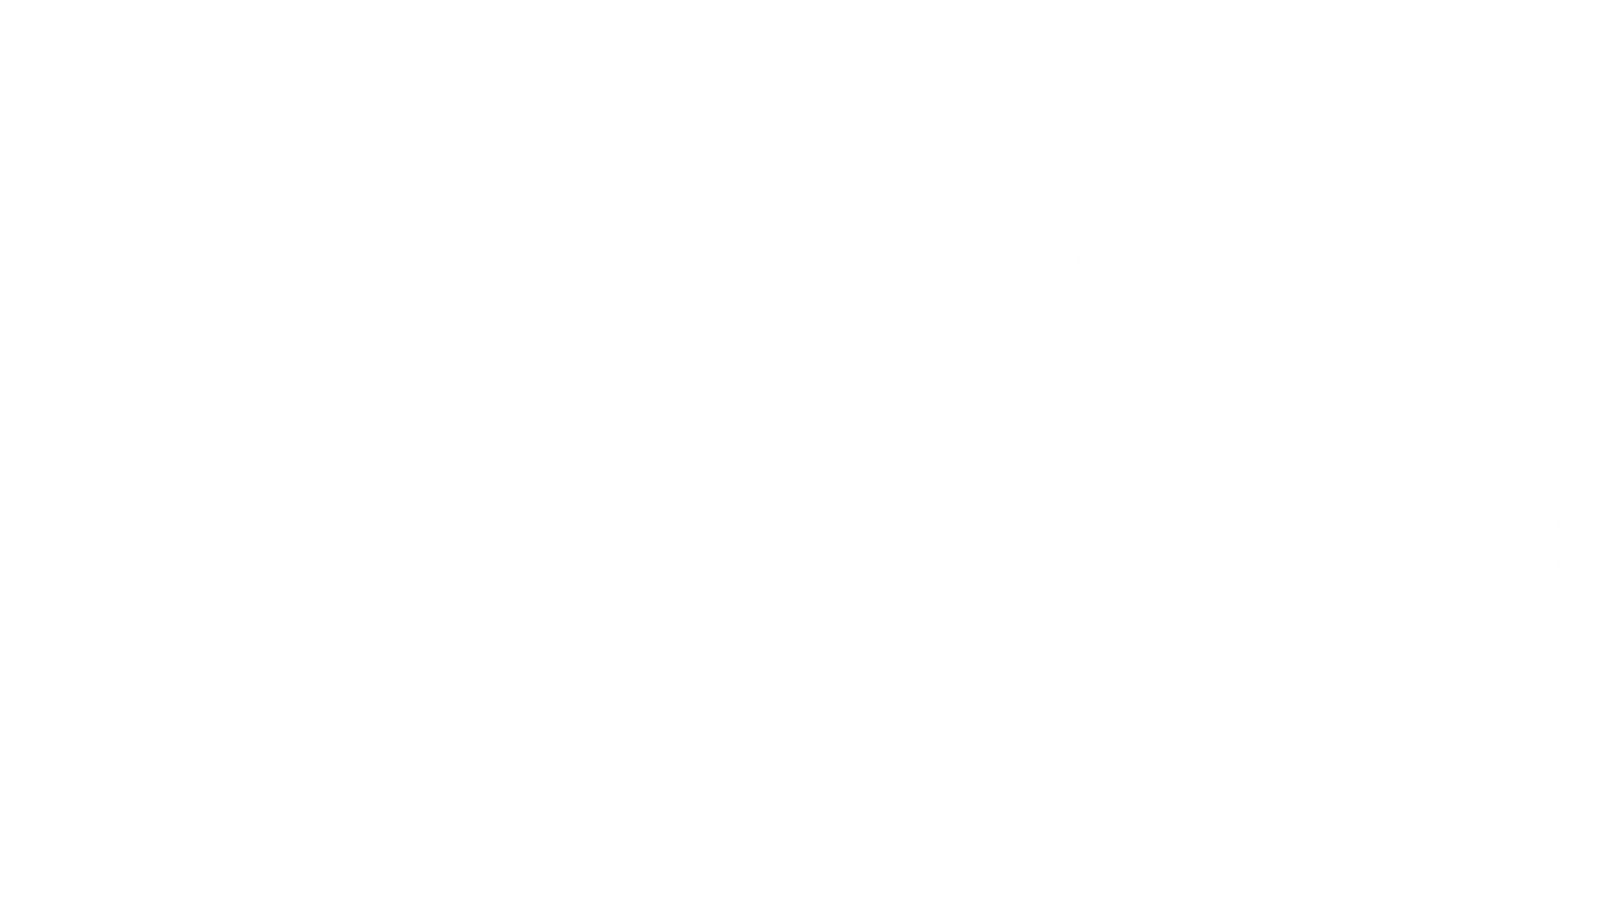 Naturasort